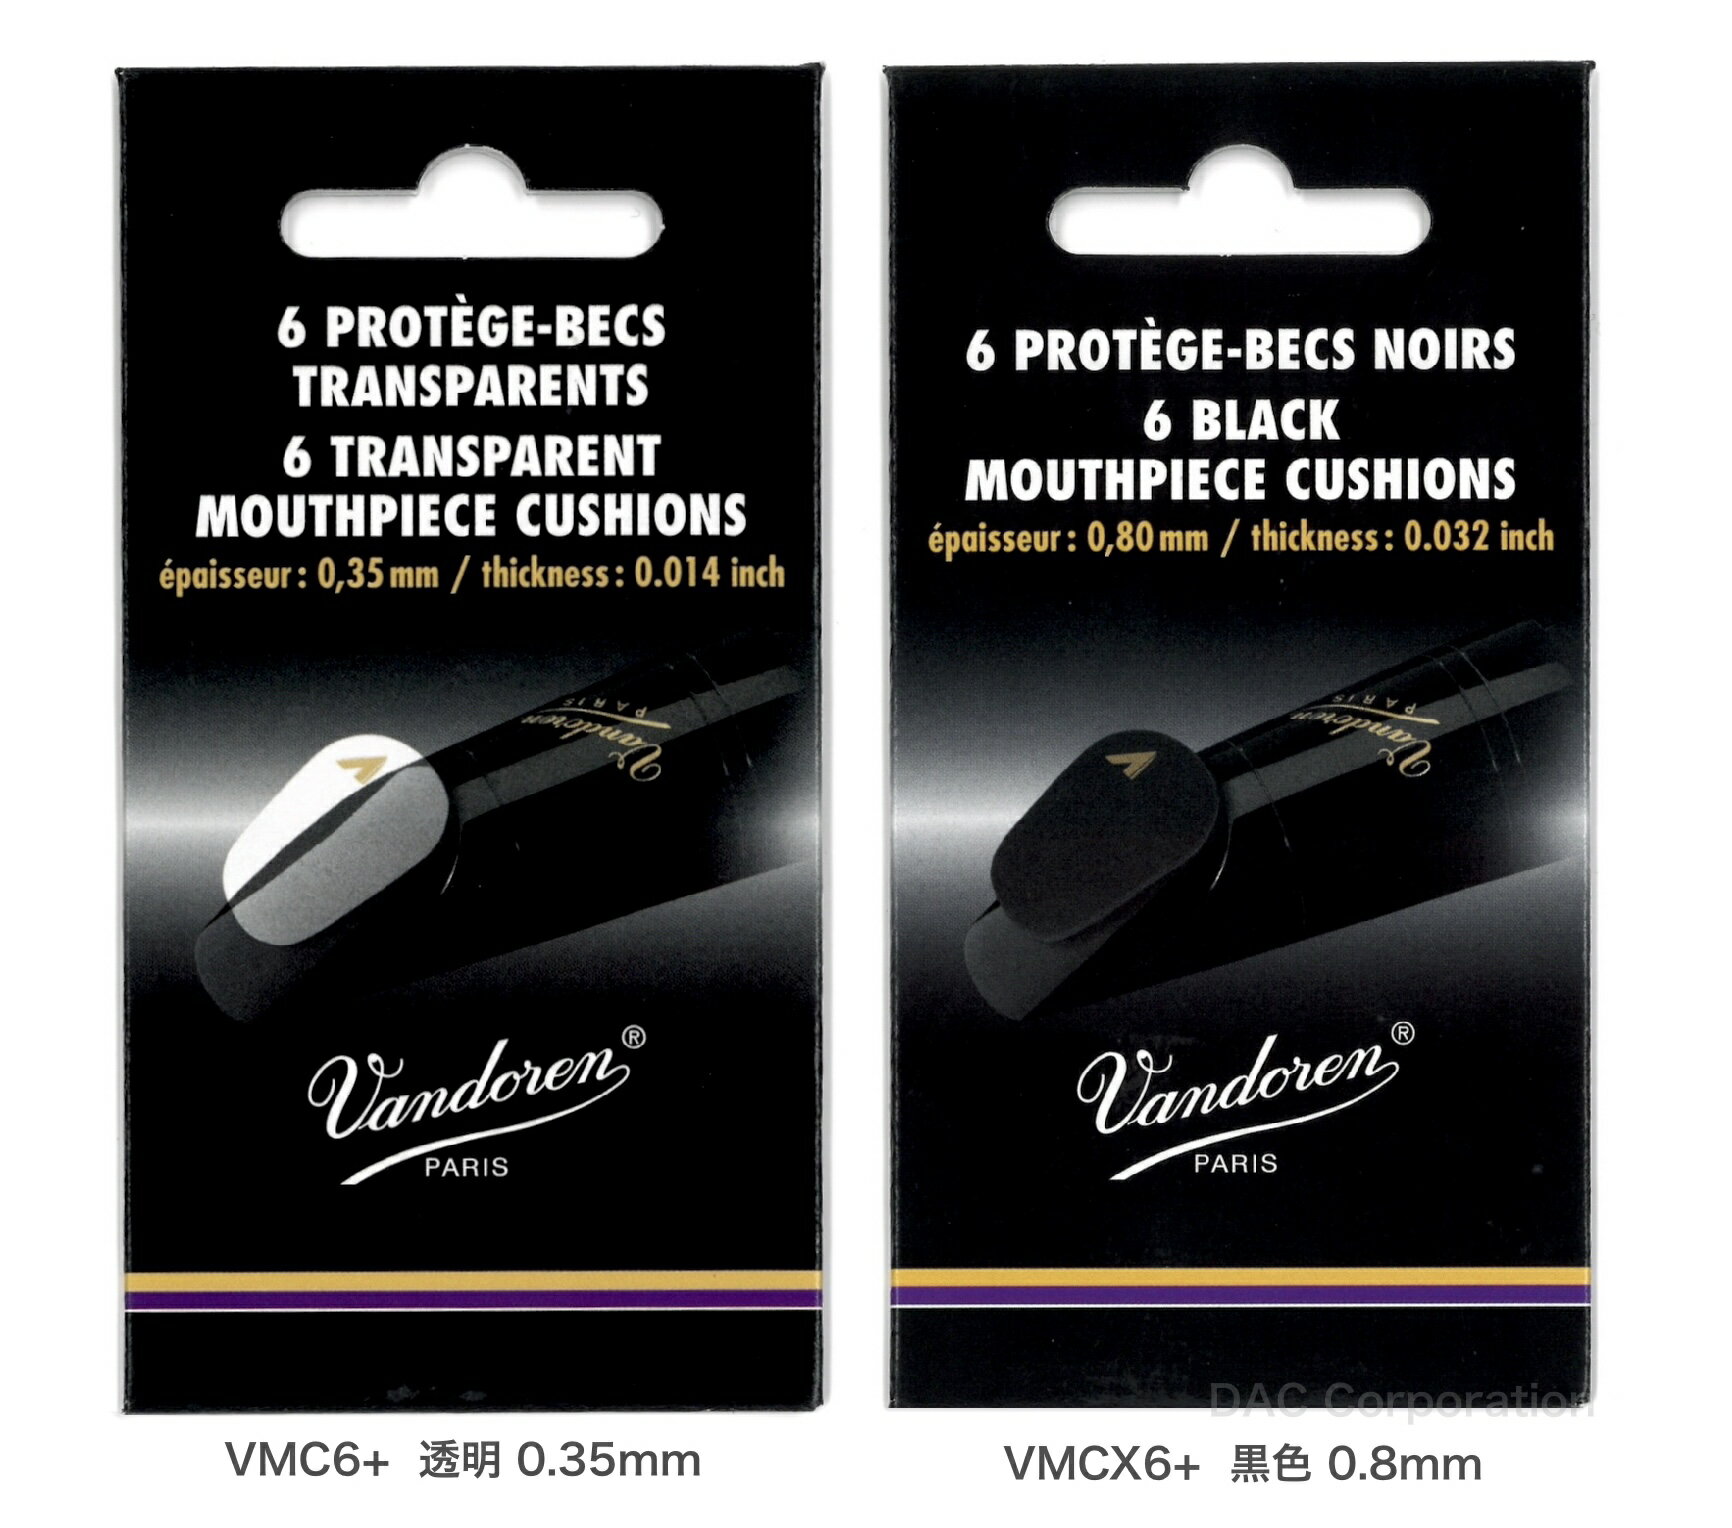 クラリネット、サクソフォンのマウスピースに貼付してご使用ください。 バンドーレンより、抵抗感がより改善されたマウスピースクッション「VMC6+」および「VMCX6+」が新たに発売となりました。 内容量：6枚入 【種類】 ・VMC6+：透明クッション、厚さ0.35mm（0.014 インチ） ・VMCX6+：黒色クッション、厚さ0.8mm（0.032 インチ）